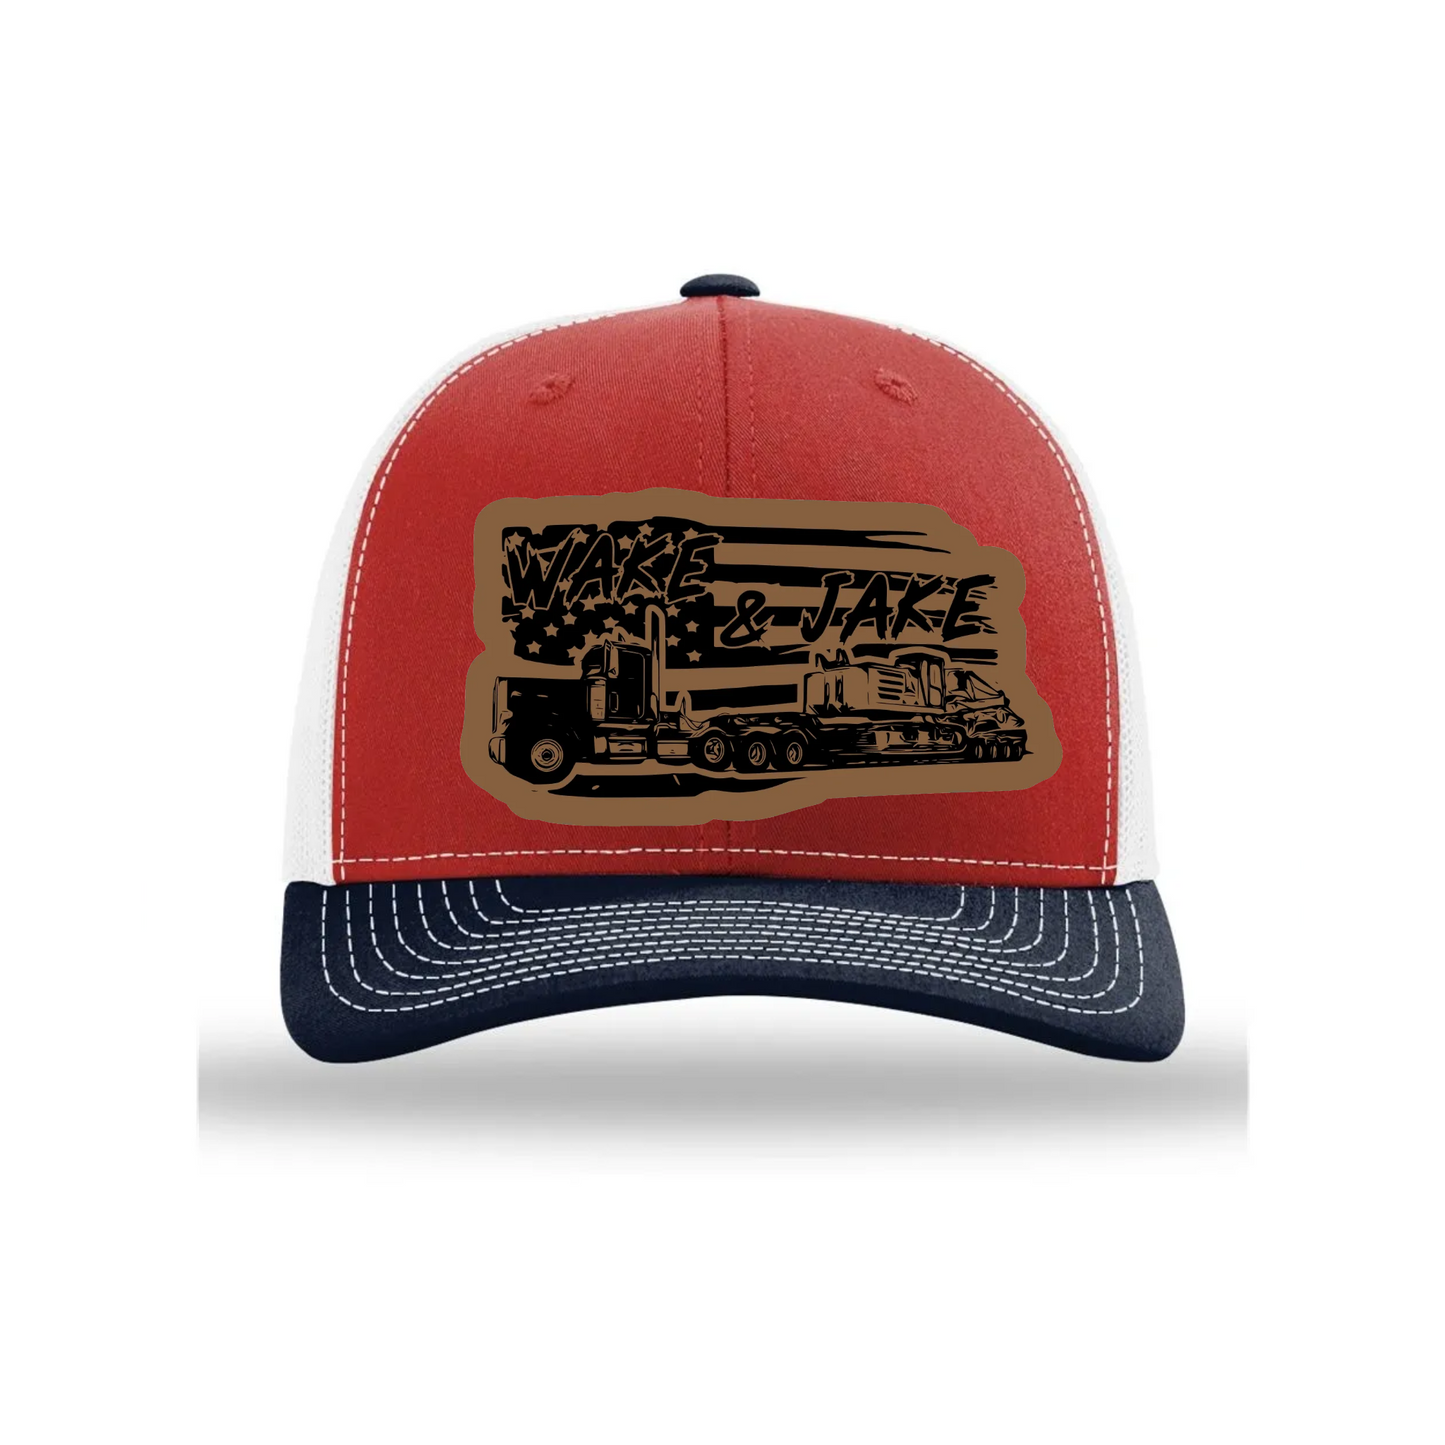 Wake & Jake Flag Leather Patch Richardson 112 Trucker Hat